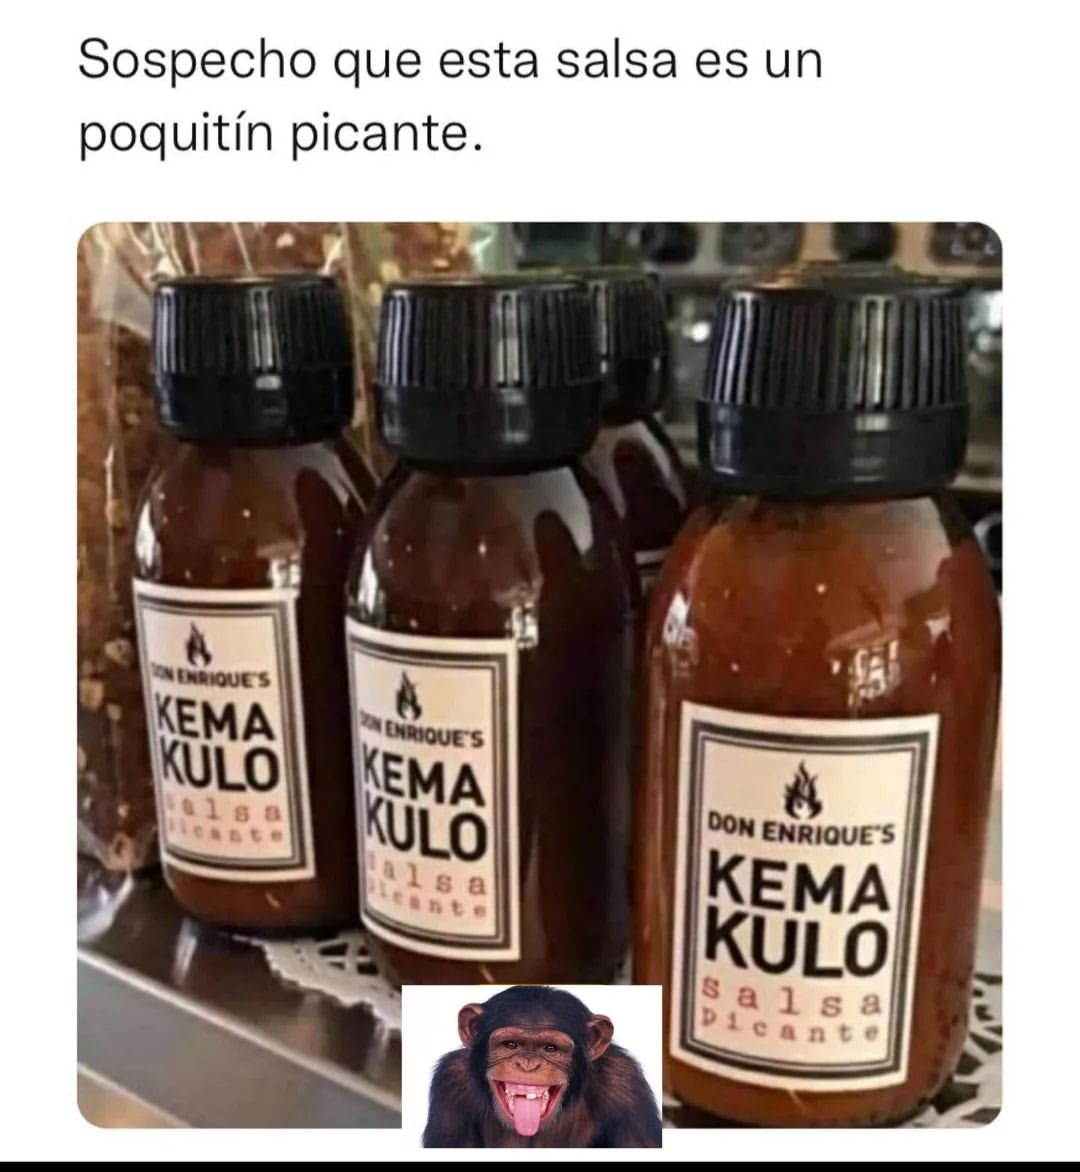 Sospecho que esta salsa es un poquitín picante. Kema Kulo.